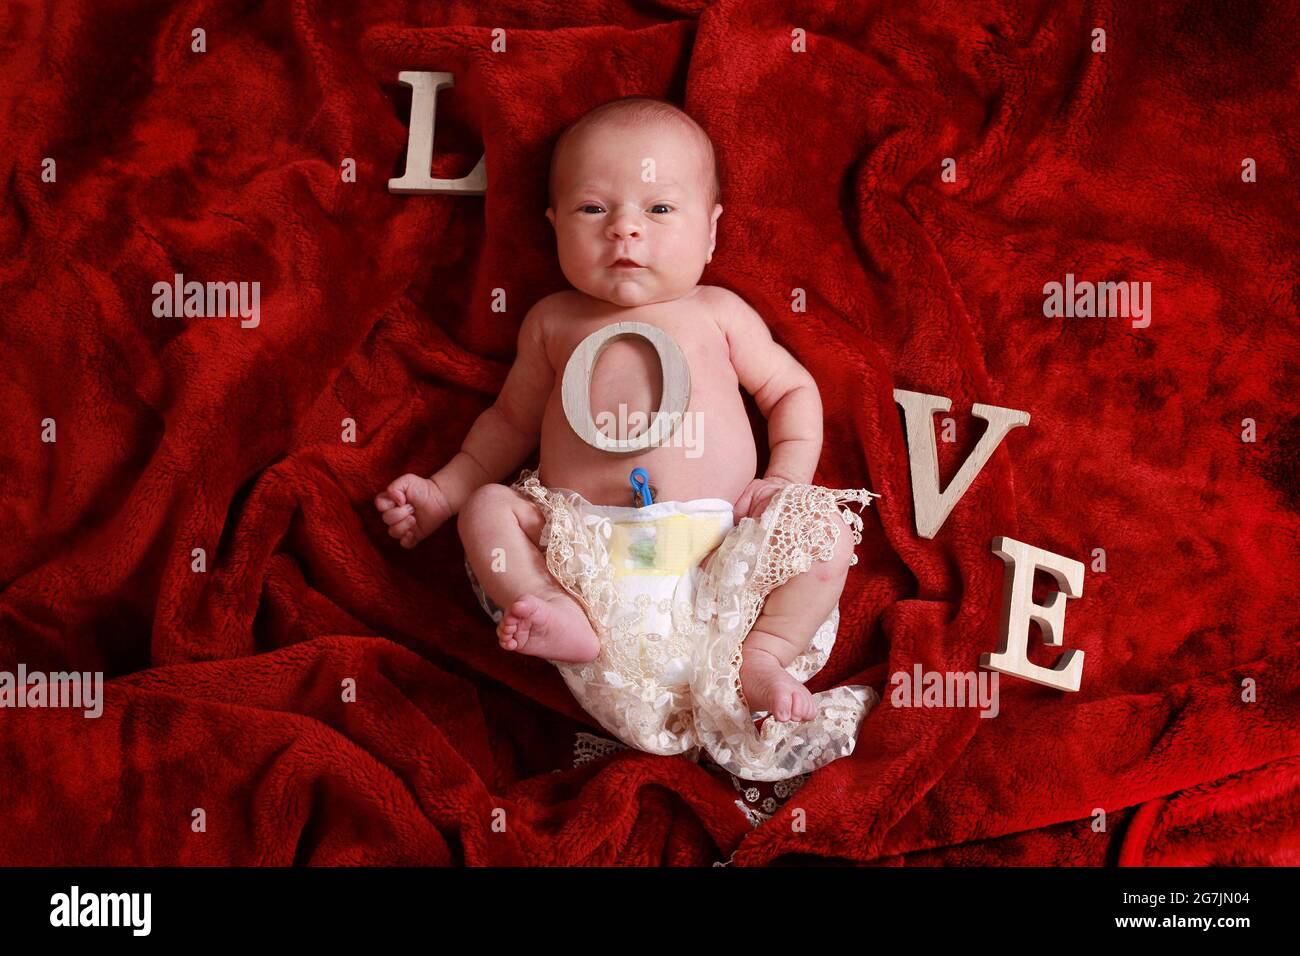 Bambino neonato conCinturno ombelicale ancora attaccato su coperta rossa nella cameretta Foto Stock